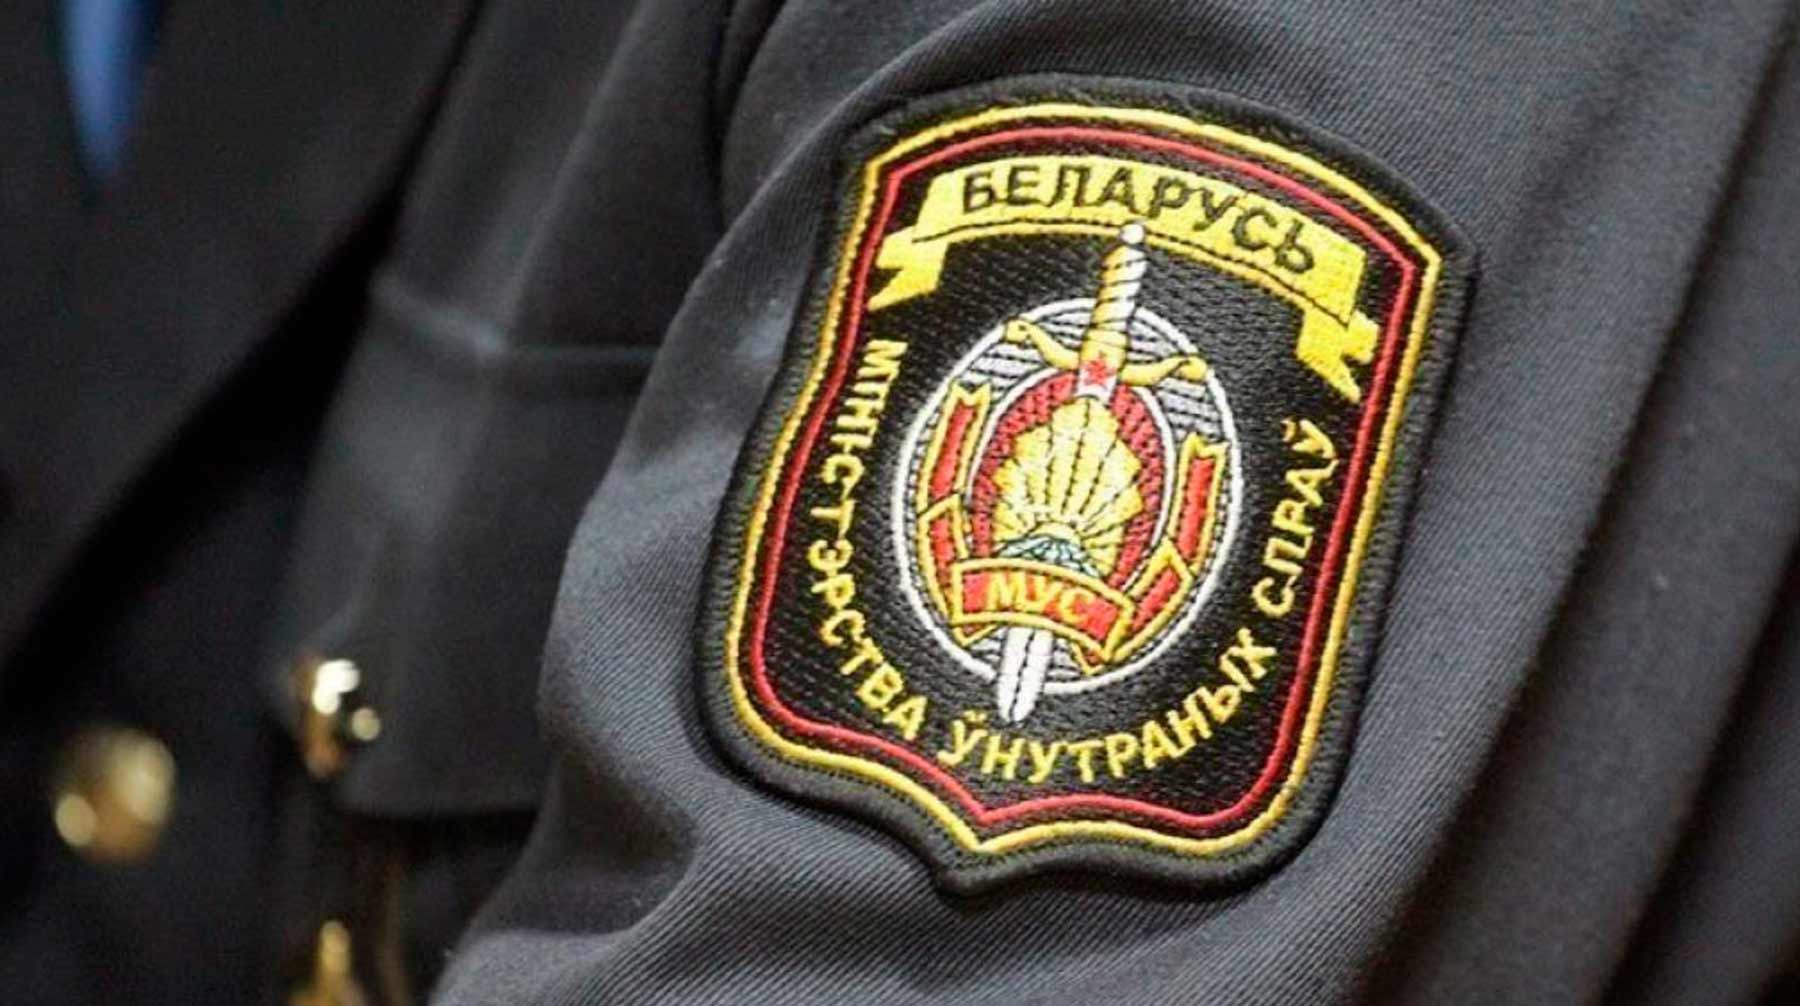 Dailystorm - Мы — не «режим», мы — часть общества: милиция Белоруссии отказалась перейти на сторону Тихановской